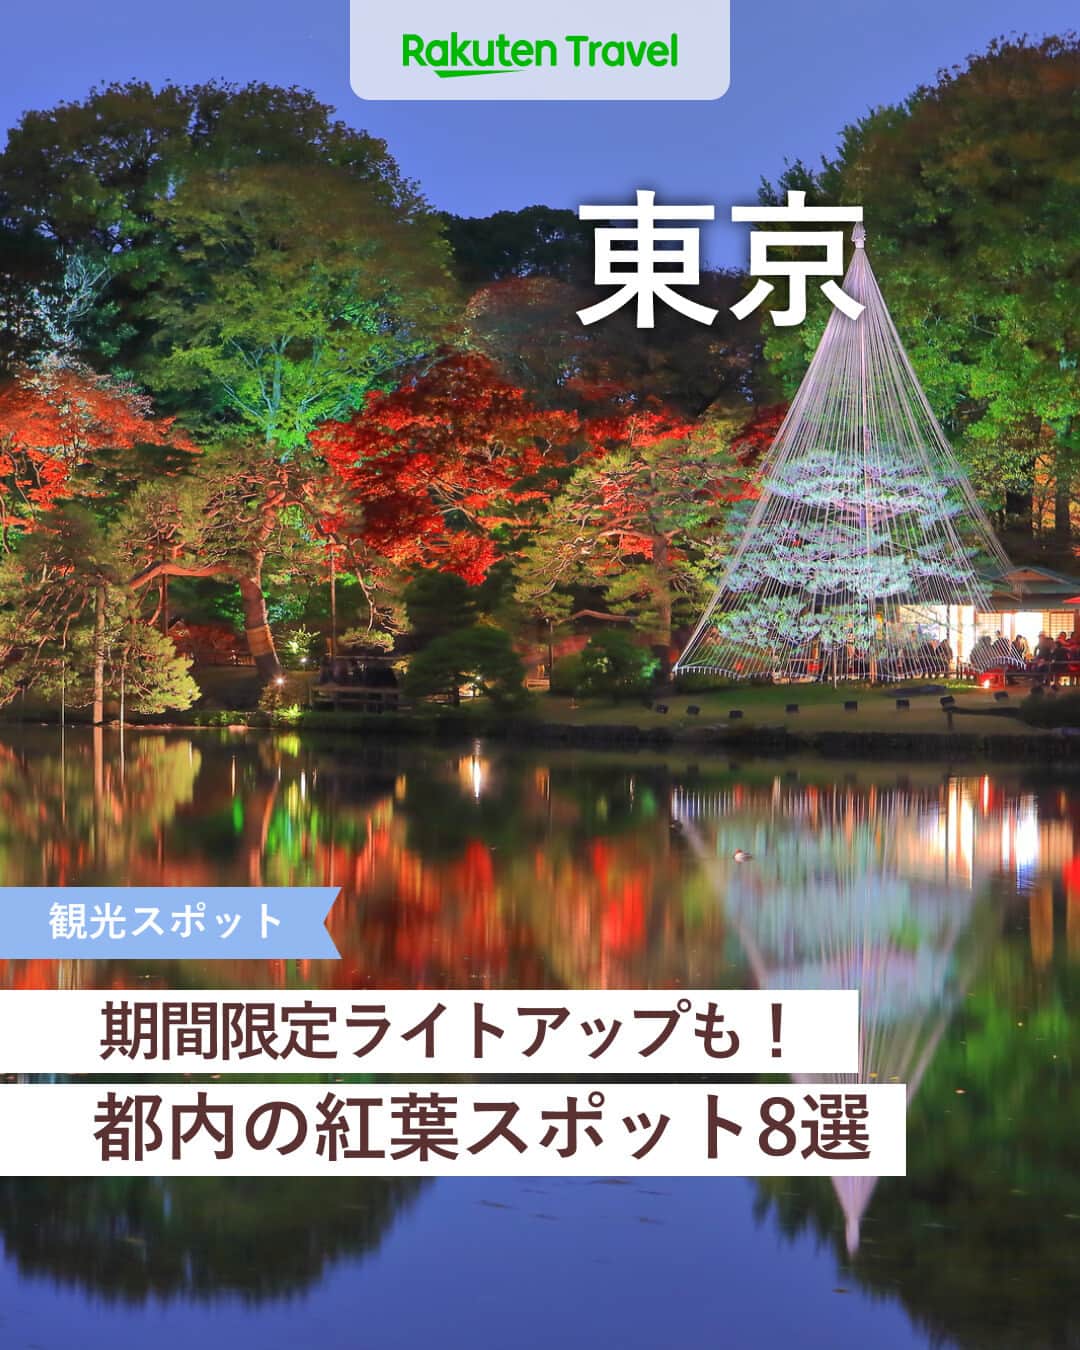 楽天トラベル のインスタグラム：「投稿を保存して見返してね😊 毎日おすすめの観光スポットやホテルを紹介している 楽天トラベル💚 👉@rakutentravel  ーーーーーーーーーーーーー  本日は、11月中旬から見頃を迎える東京の紅葉を紹介します🍁 期間限定のライトアップの演出もあるのでお見逃しなく👀  ーーーーーーーーーーーーー  1　#六義園（りくぎえん） 2　#大田黒公園 3　#目白庭園 4　#小石川後楽園 5　#高尾山 6　#御岳渓谷（みたけけいこく） 7　#九品仏浄真寺（くほんぶつじょうしんじ） 8　#神代植物公園（じんだいしょくぶつこうえん）  ーーーーーーーーーーーーー  #rakutentravel をつけて投稿してくだされば、 あなたの撮った写真が楽天トラベルアカウントに掲載されるかも👀  旅の計画に夢中になれるインスタマガジン👜 楽天トラベルをフォローして理想の旅をみつけてね🛫@rakutentravel  いってみたいと思った人は気軽にコメント欄にスタンプ送ってね💕  ーーーーーーーーーーーーー」